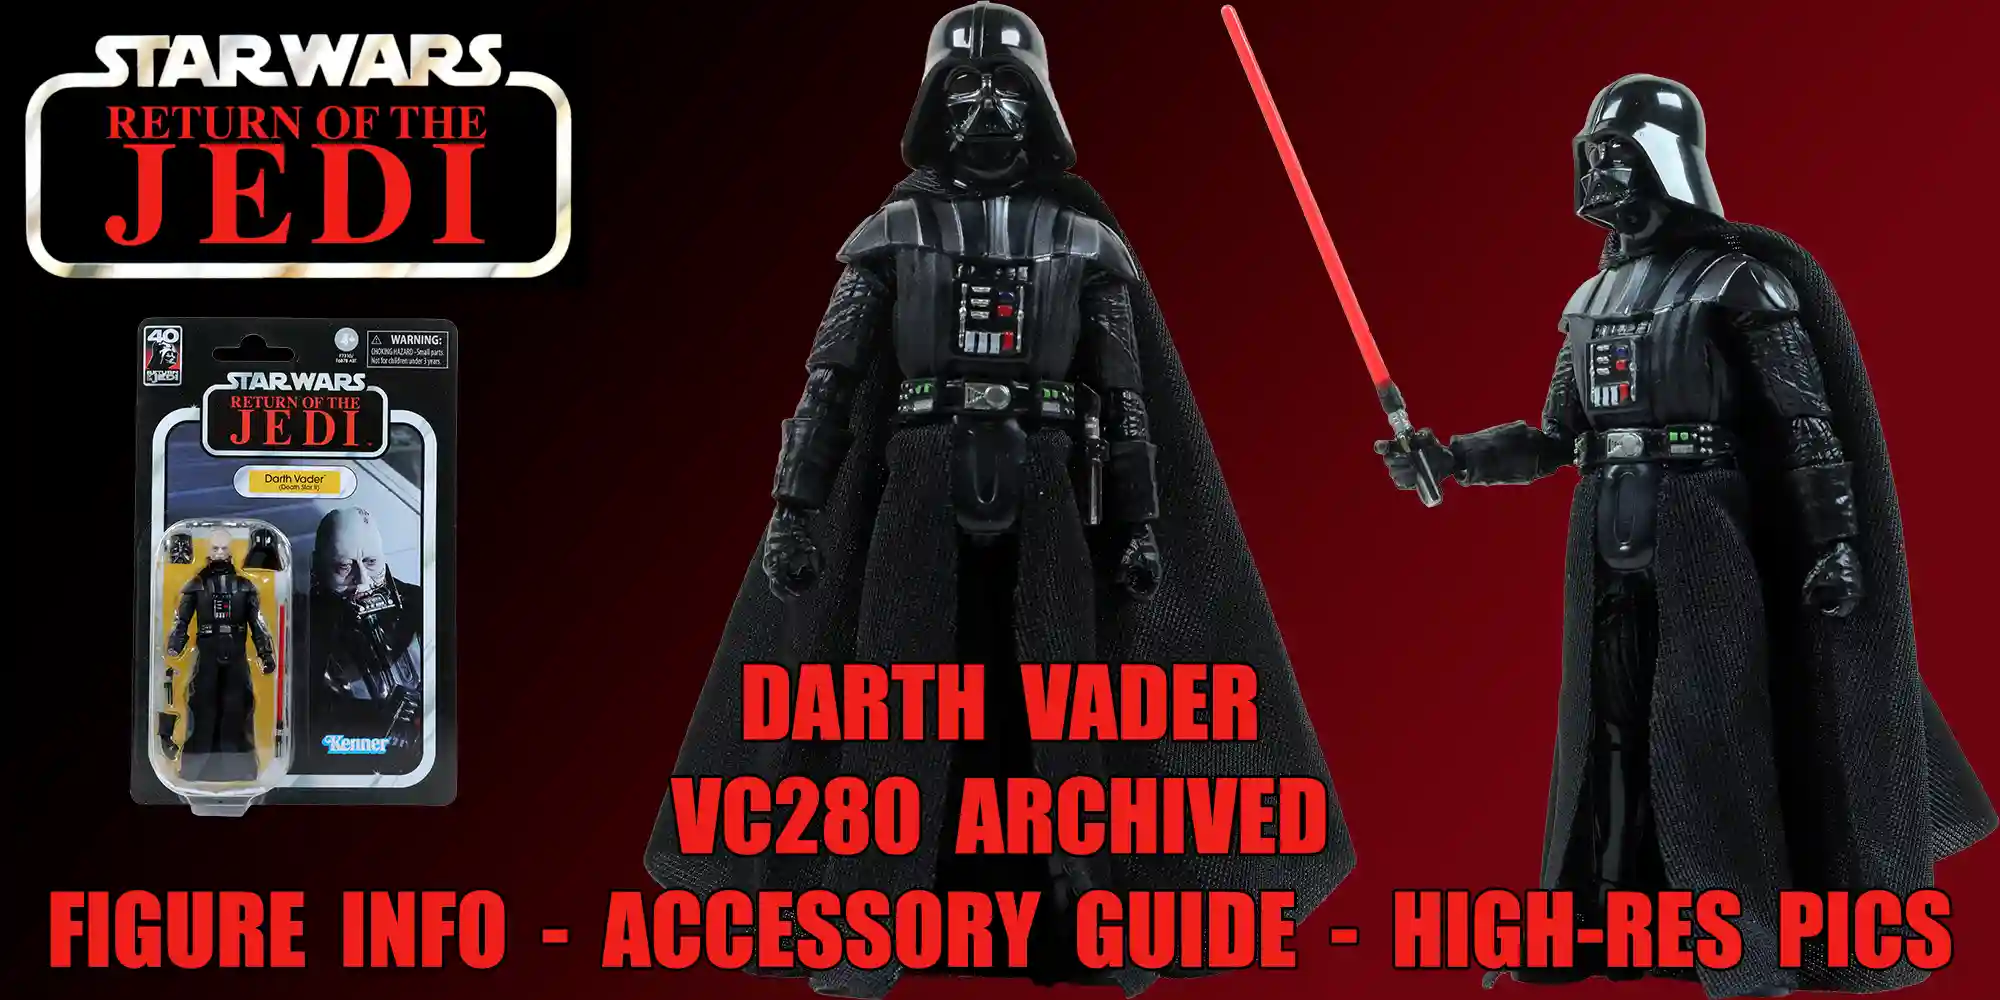 Darth Vader VC280 Added